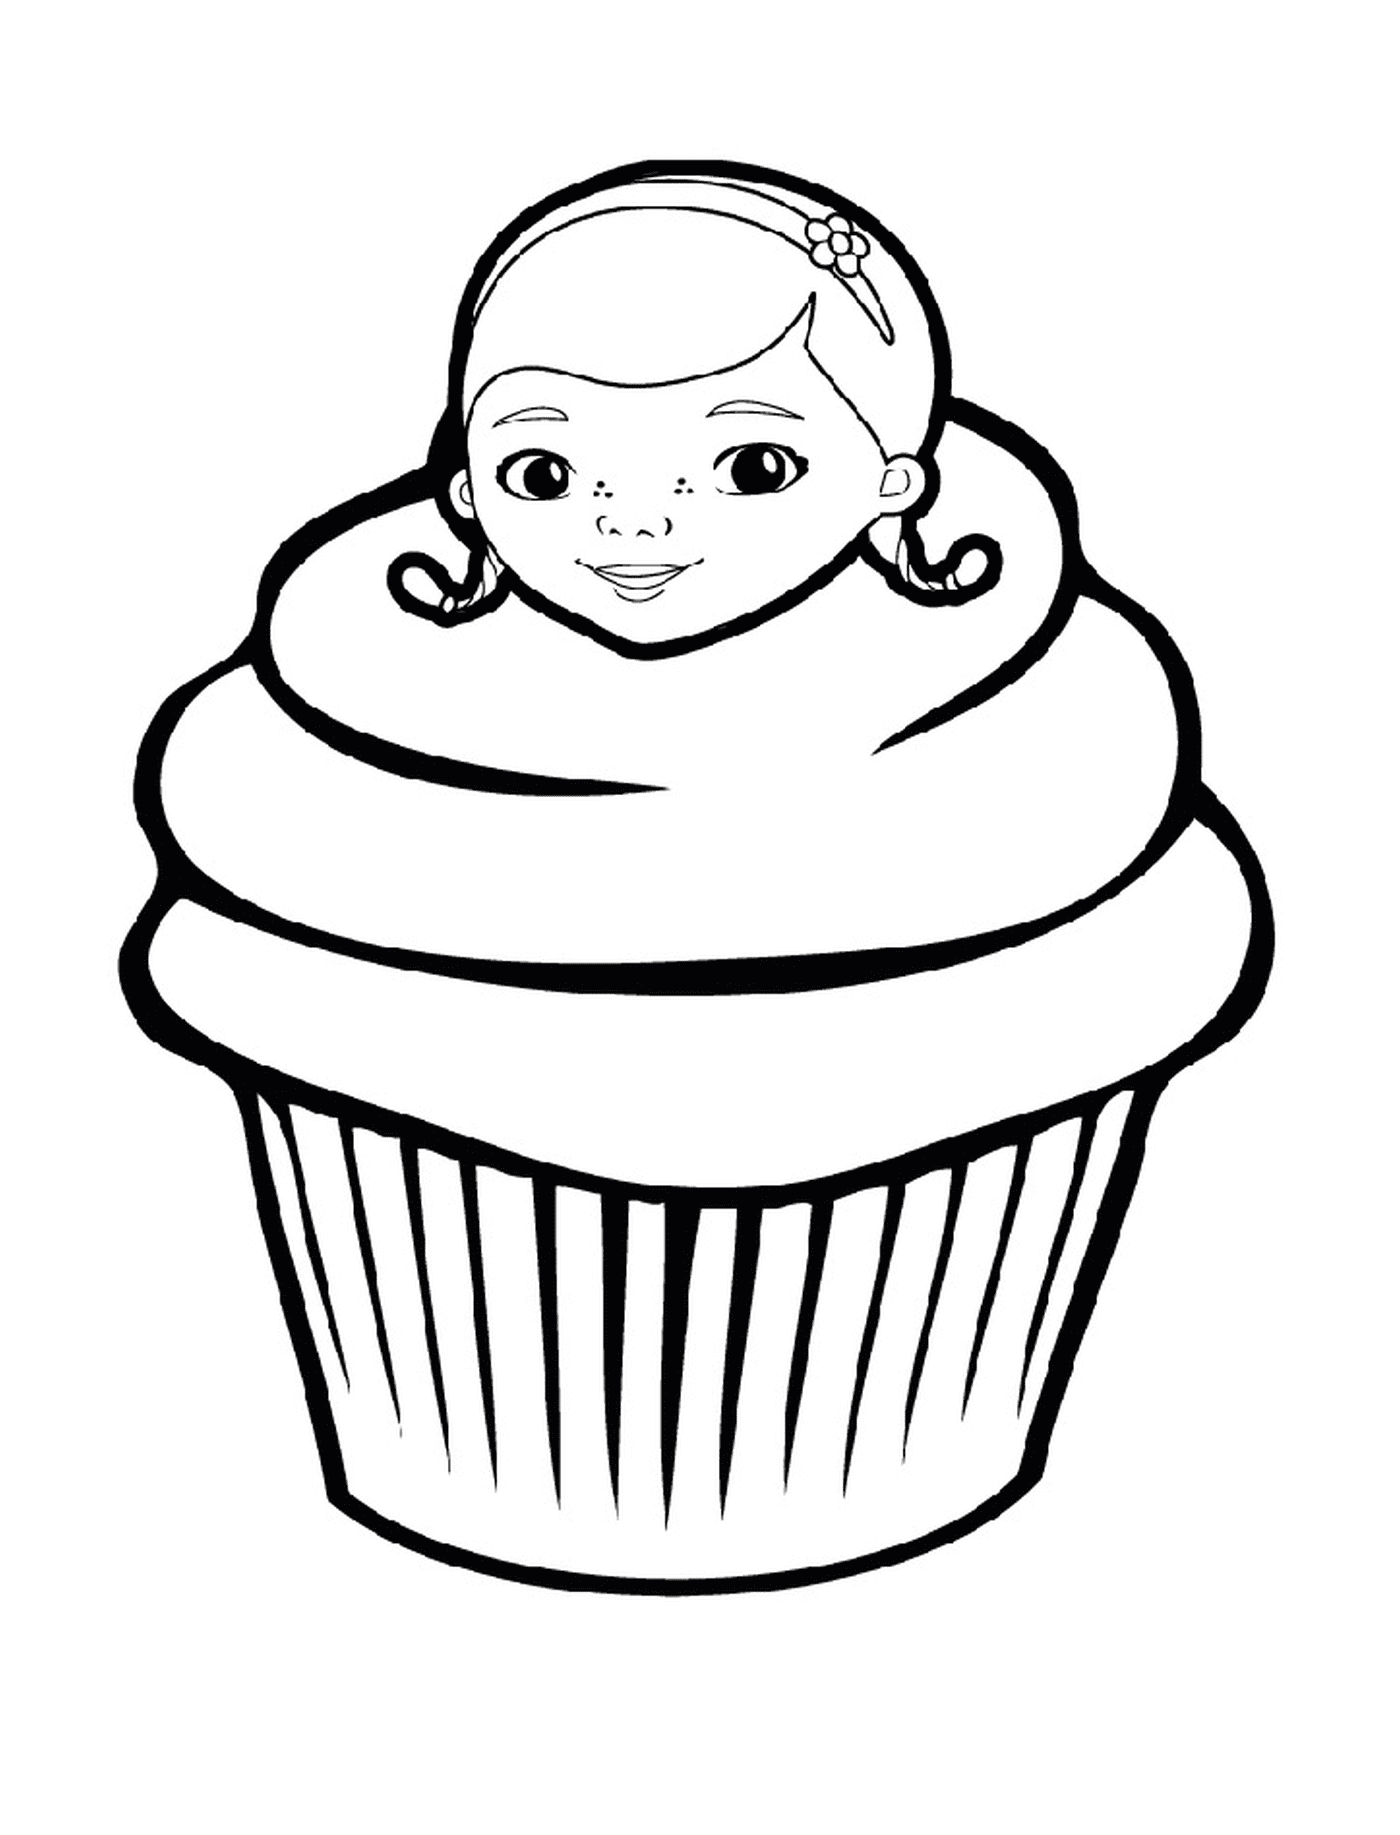  Un cupcake di Doc McStuffins, con il viso di una donna 